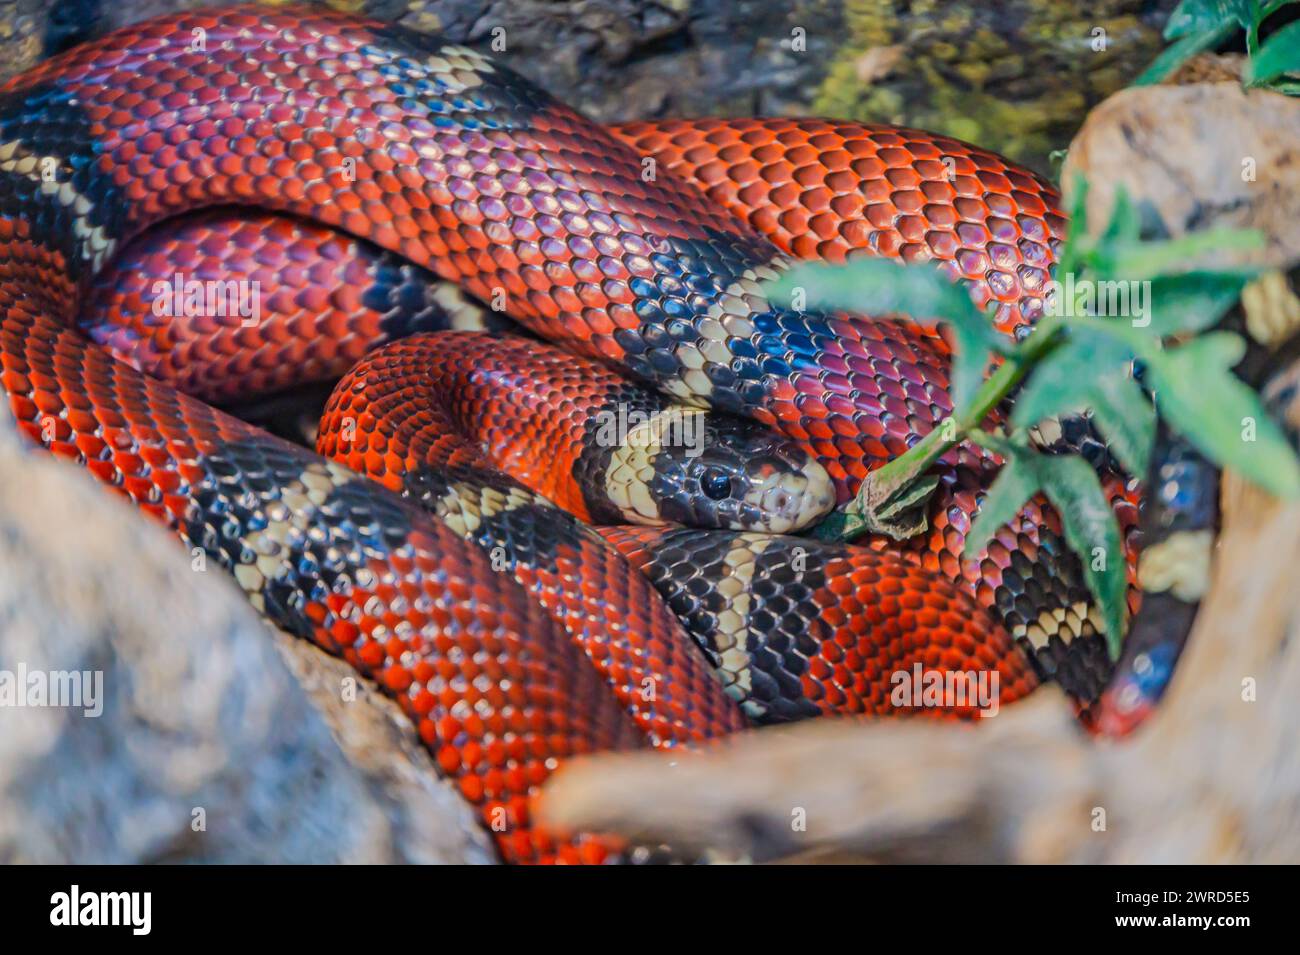 Lampropeltis triangulum sinaloae, également connu sous le nom de serpent laitier sinaloen. Ce serpent coluhybride non venimeux est connu pour son corps rouge avec du noir et du blanc Banque D'Images